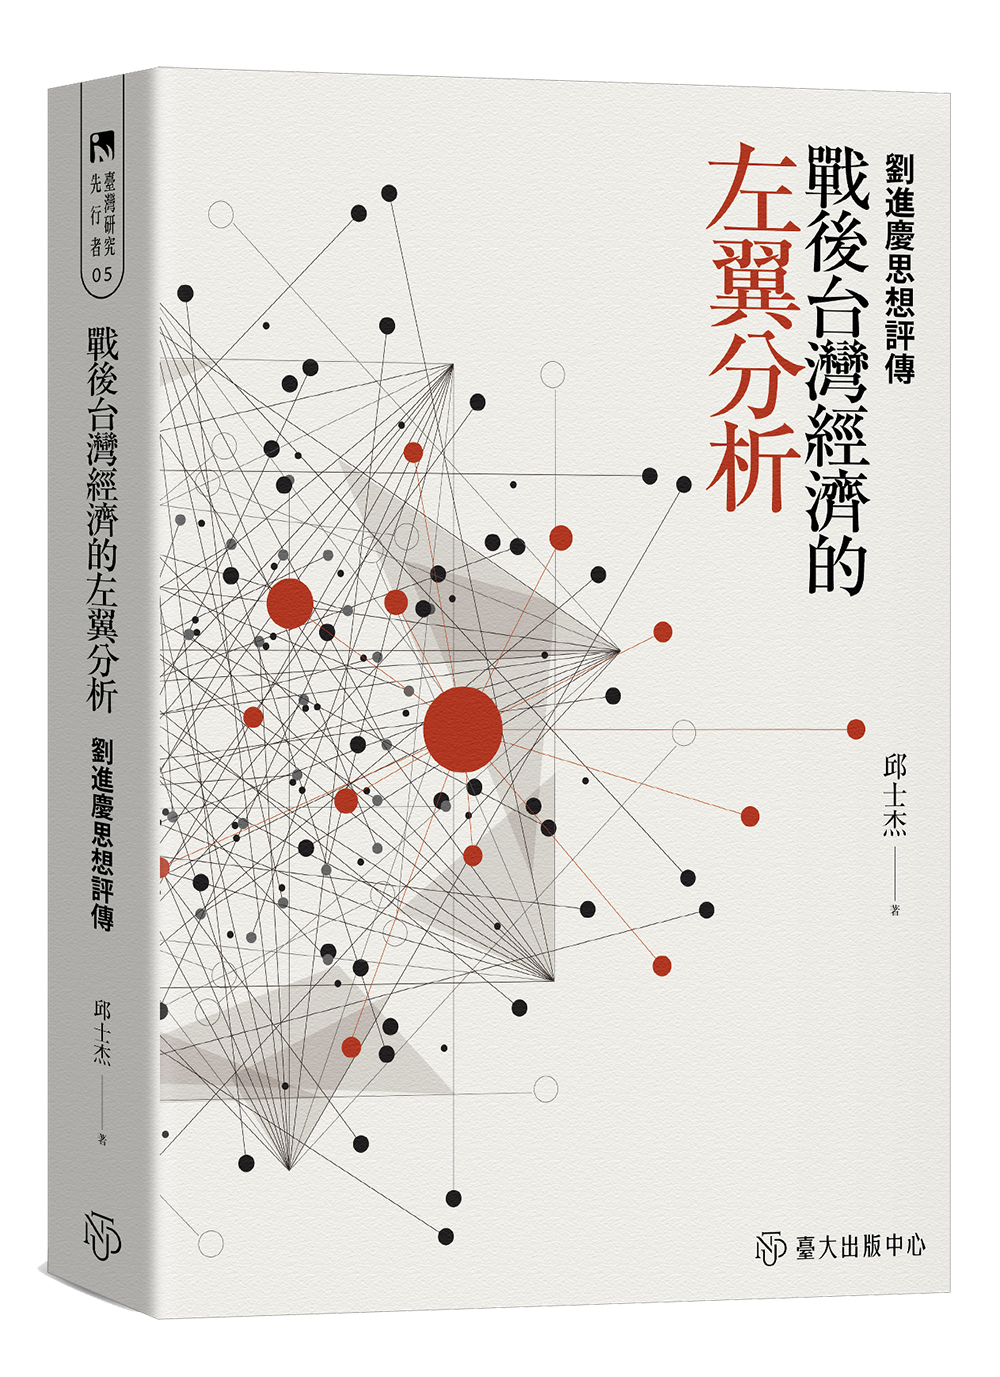 Liu Shinkei: An Intellectual Biography